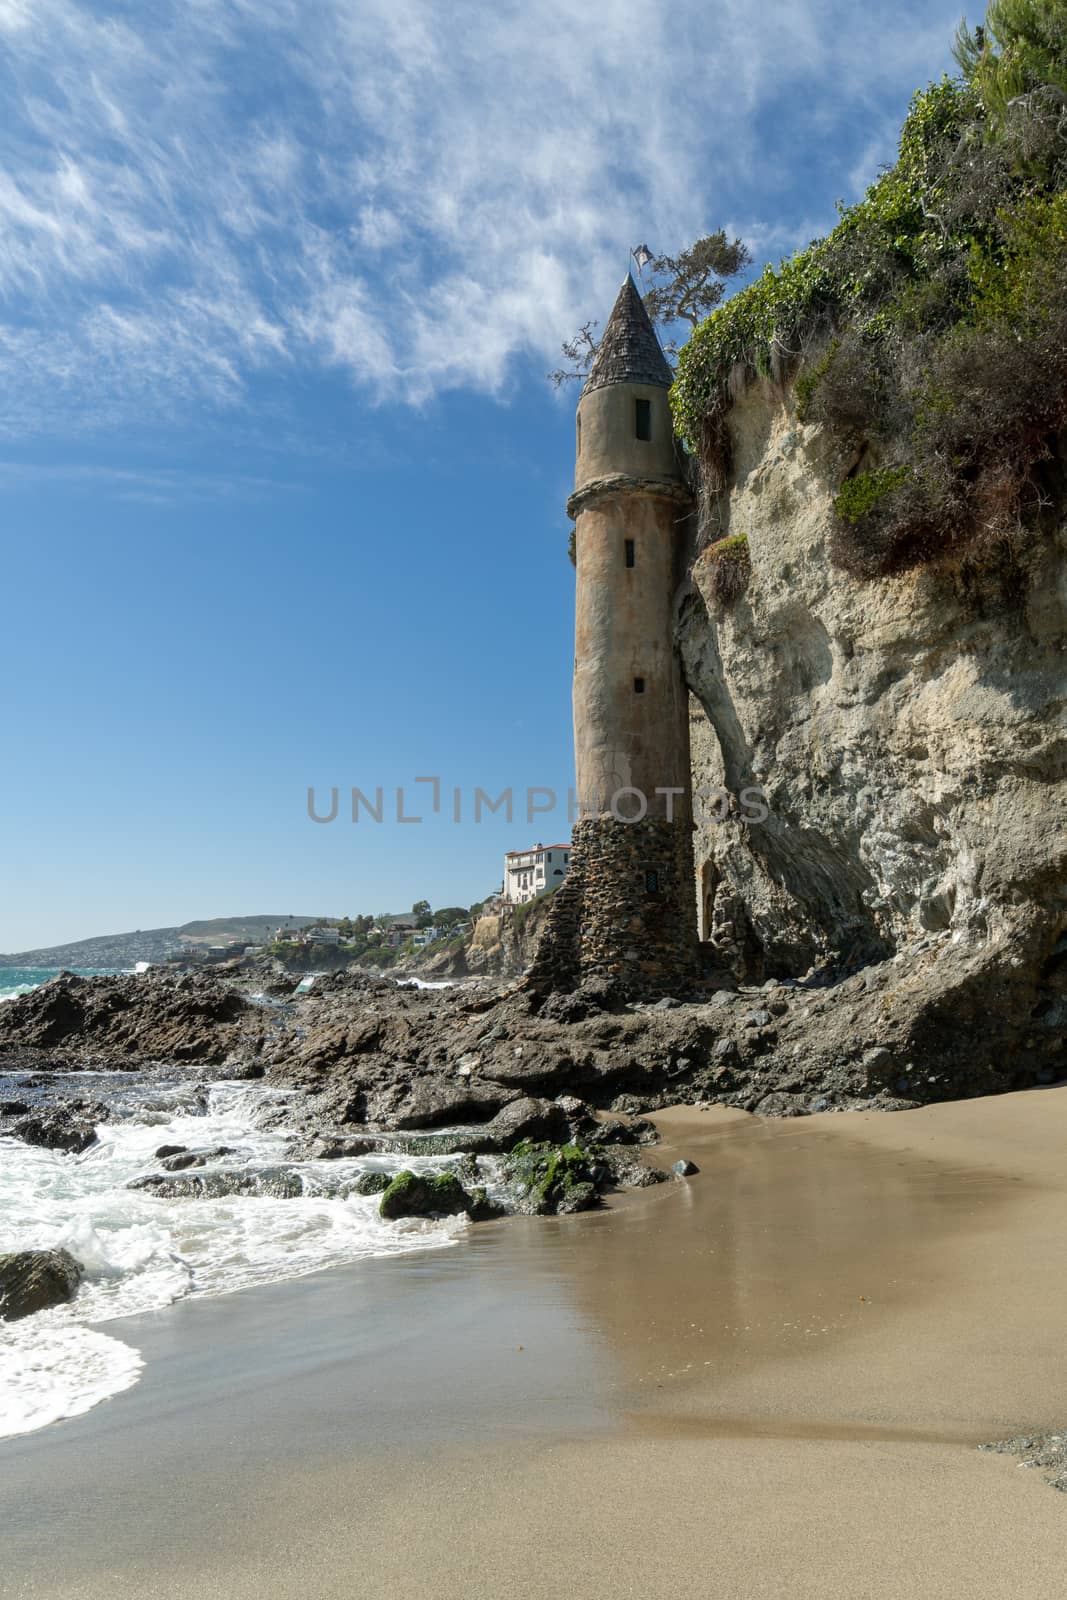 The Pirates Tower At Victoria Beach In Laguna Beach, South California, USA